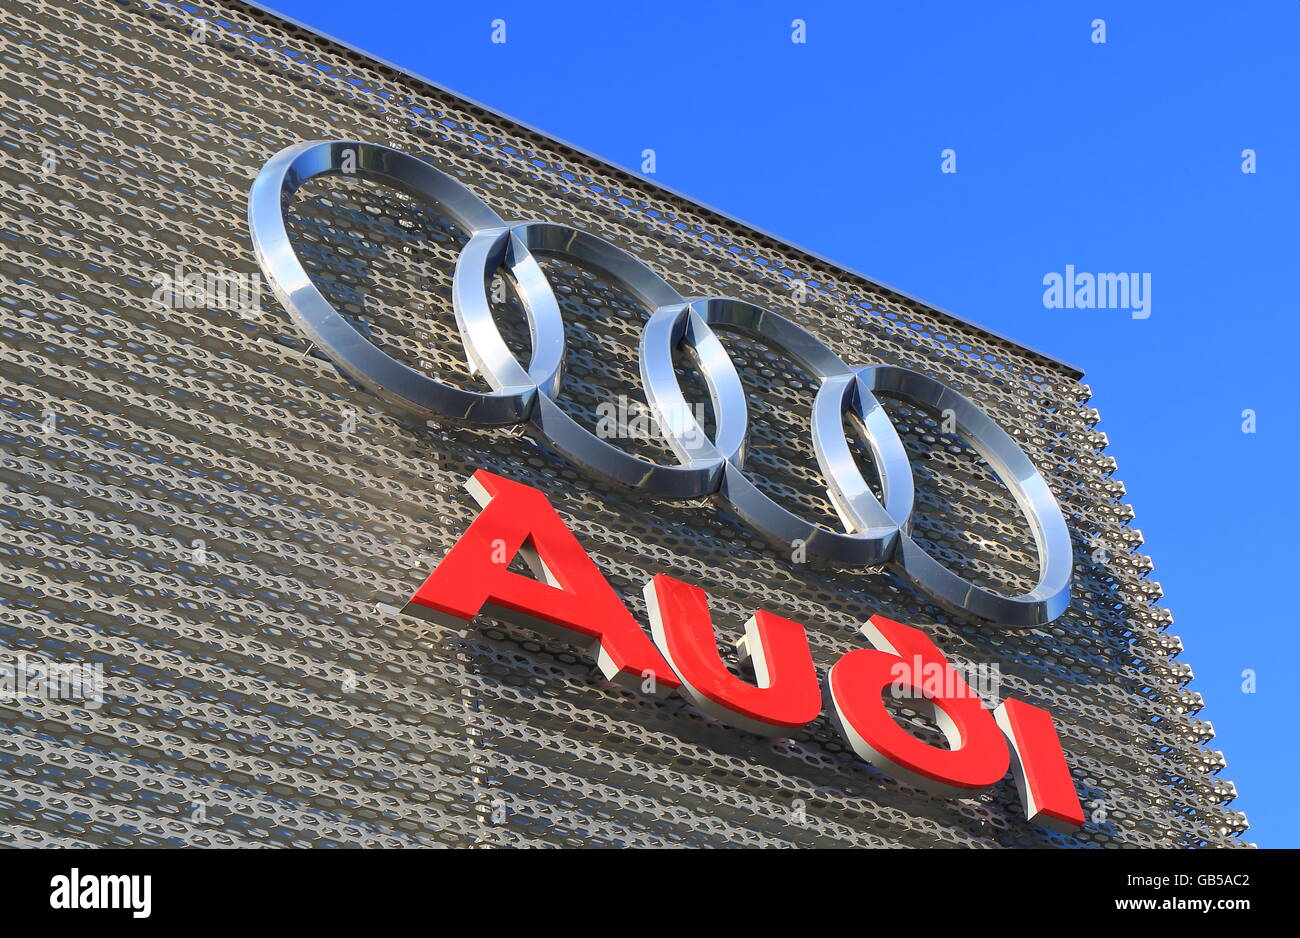 Audi car manufacturer Stock Photo